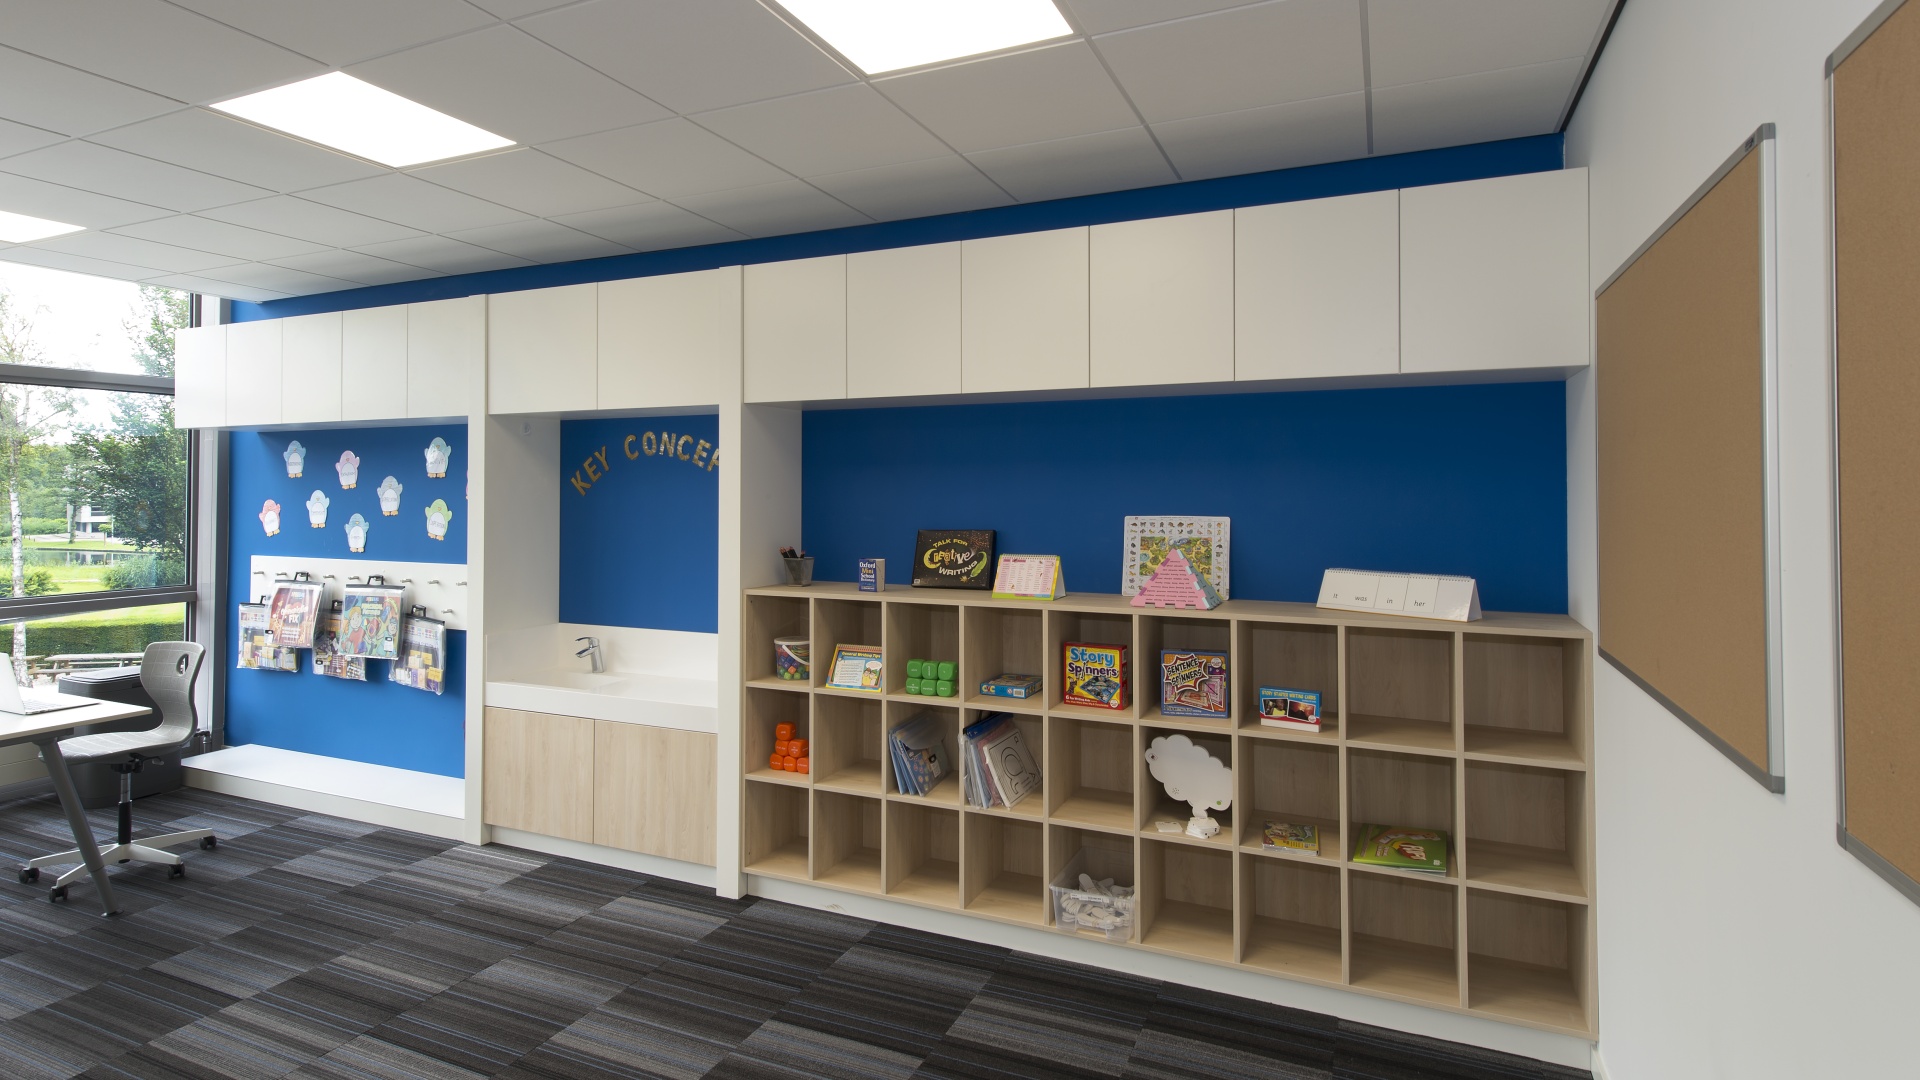 Vakkenkasten, garderobe en pantry in klaslokaal, kleur eiken/ wit / blauw, onderwijsmeubilair